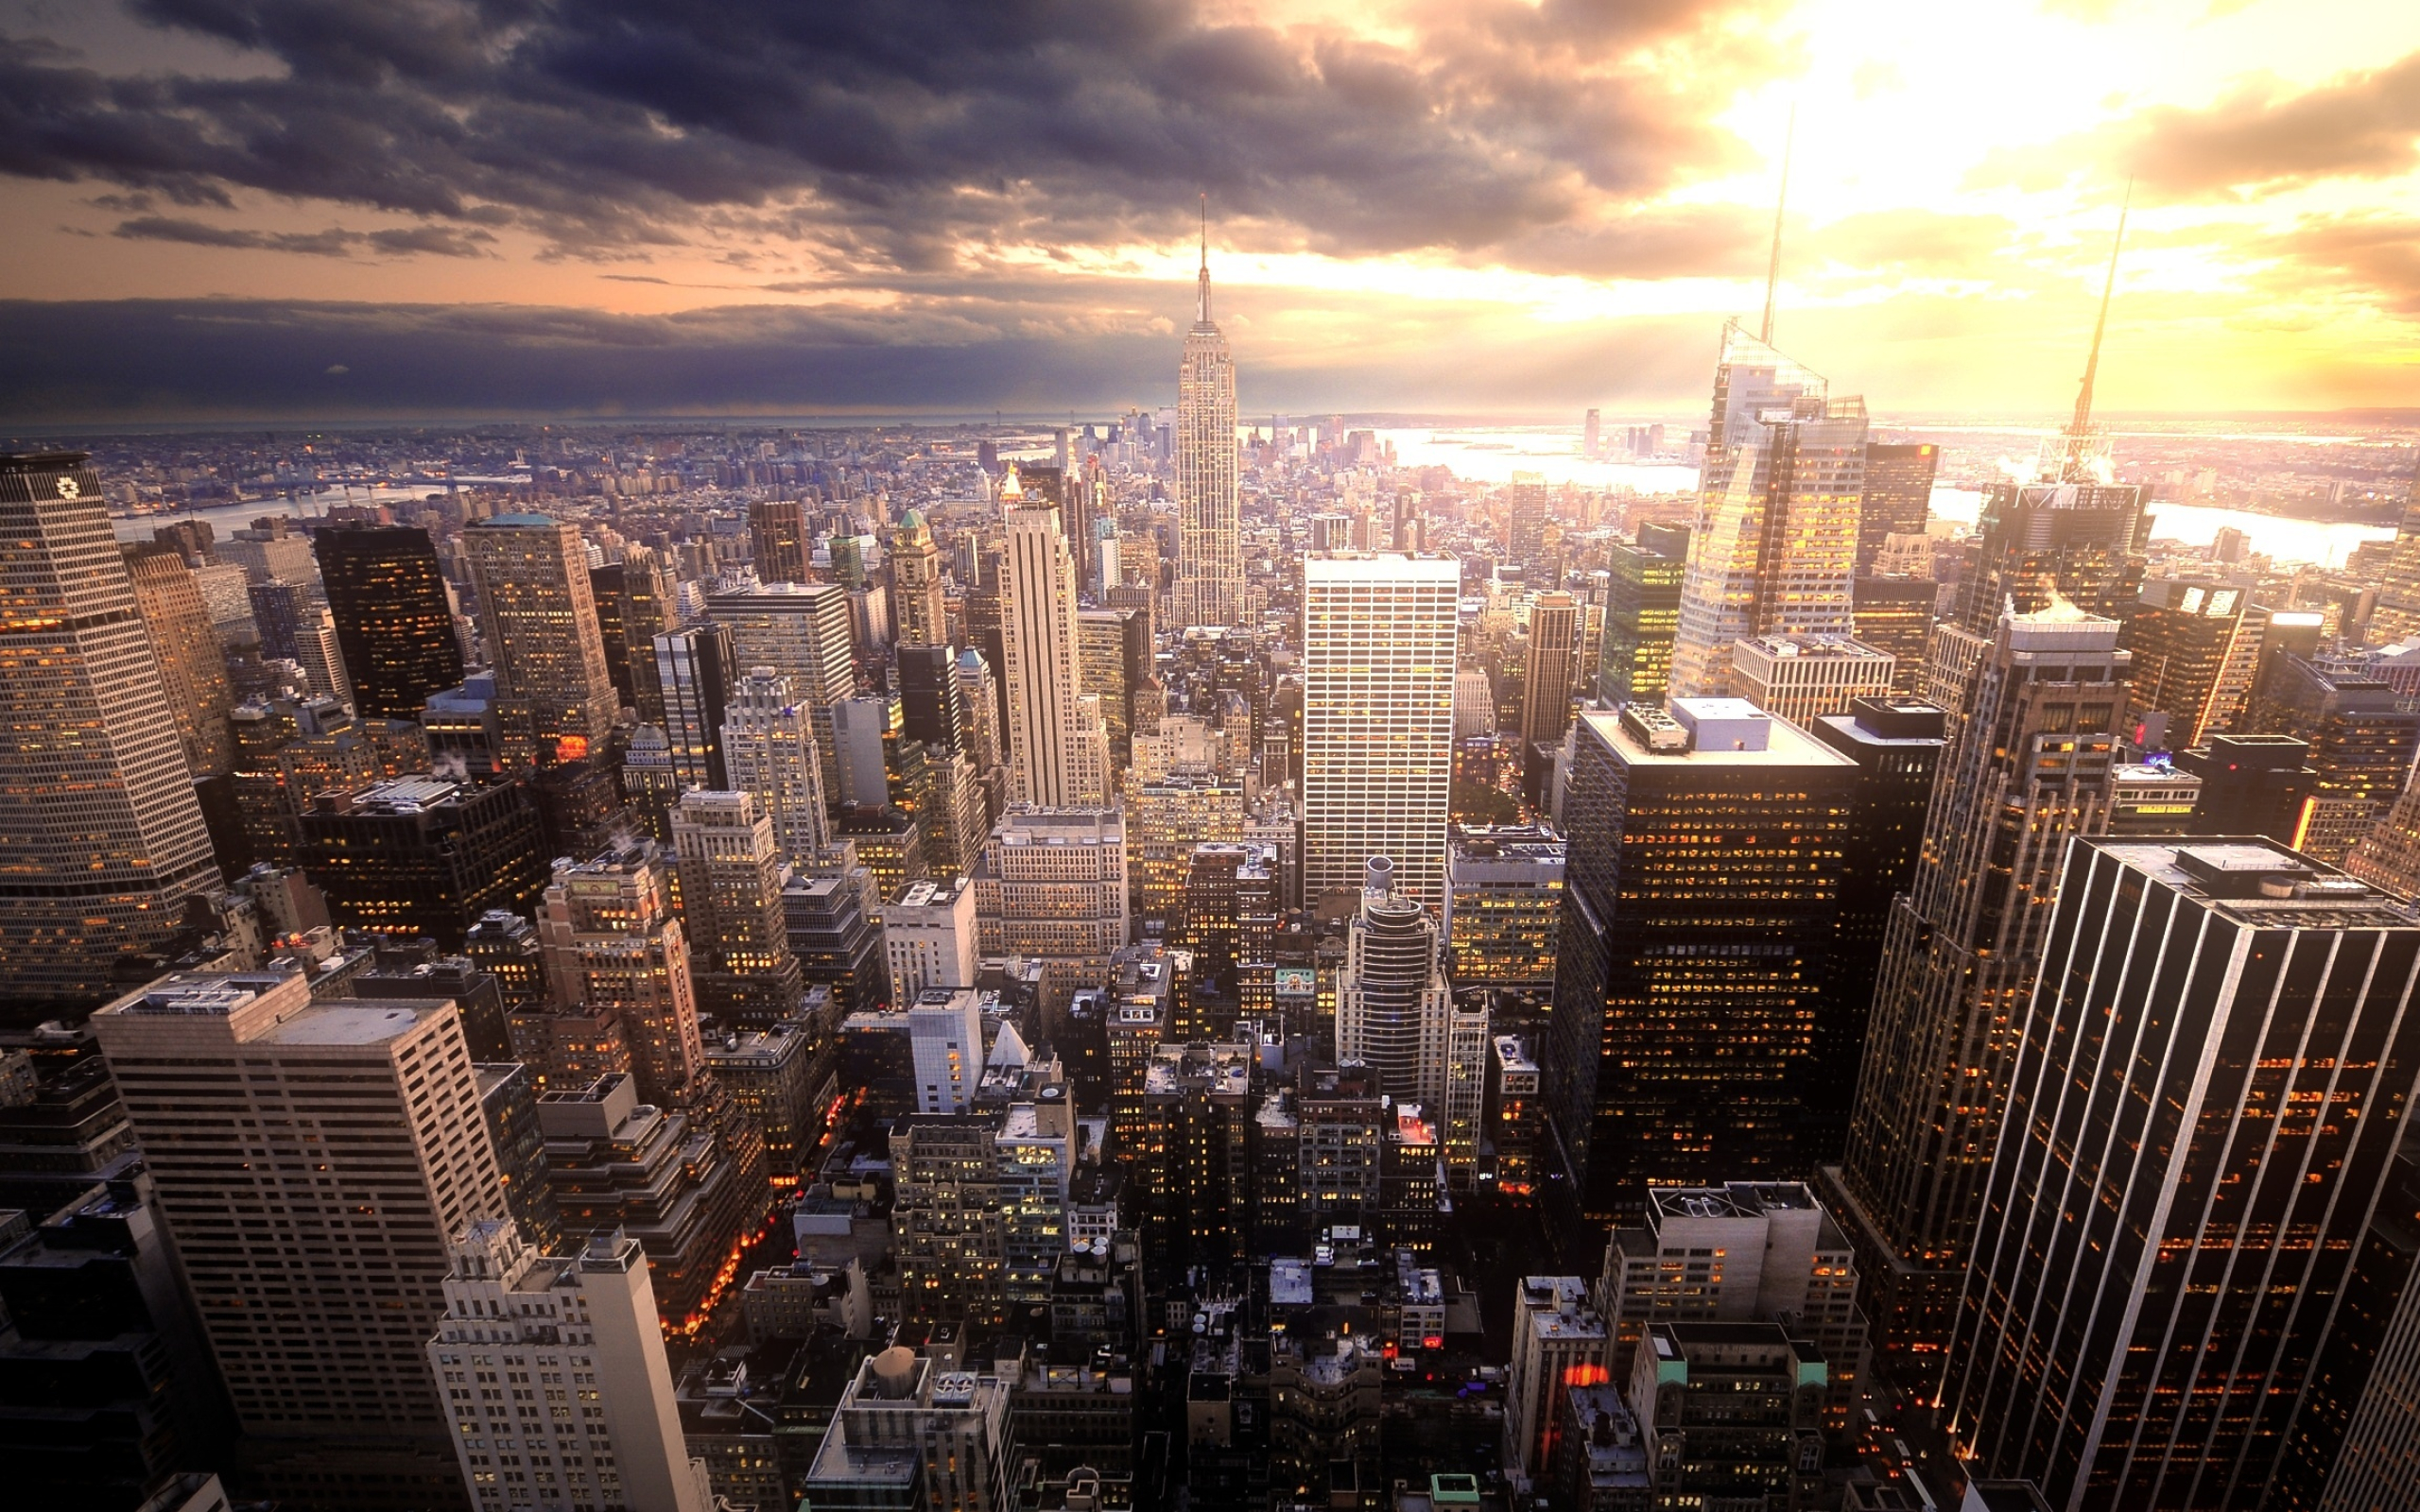 Manhattan (Travels), Manhattan desktop wallpapers, Urban cityscapes, Desktop backgrounds, 2560x1600 HD Desktop